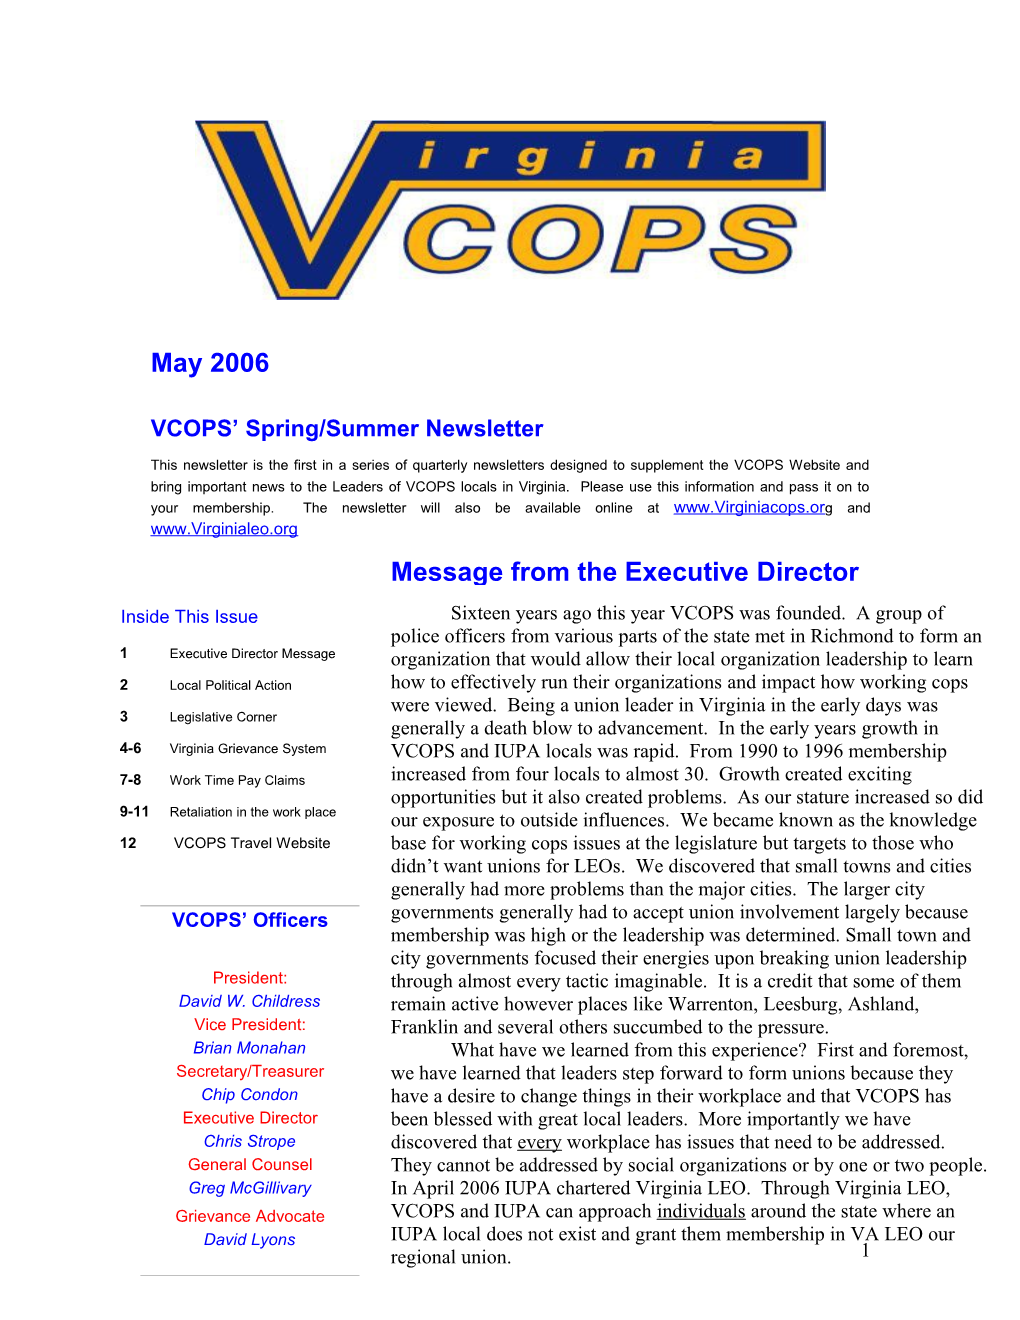 VCOPS Spring/Summer Newsletter